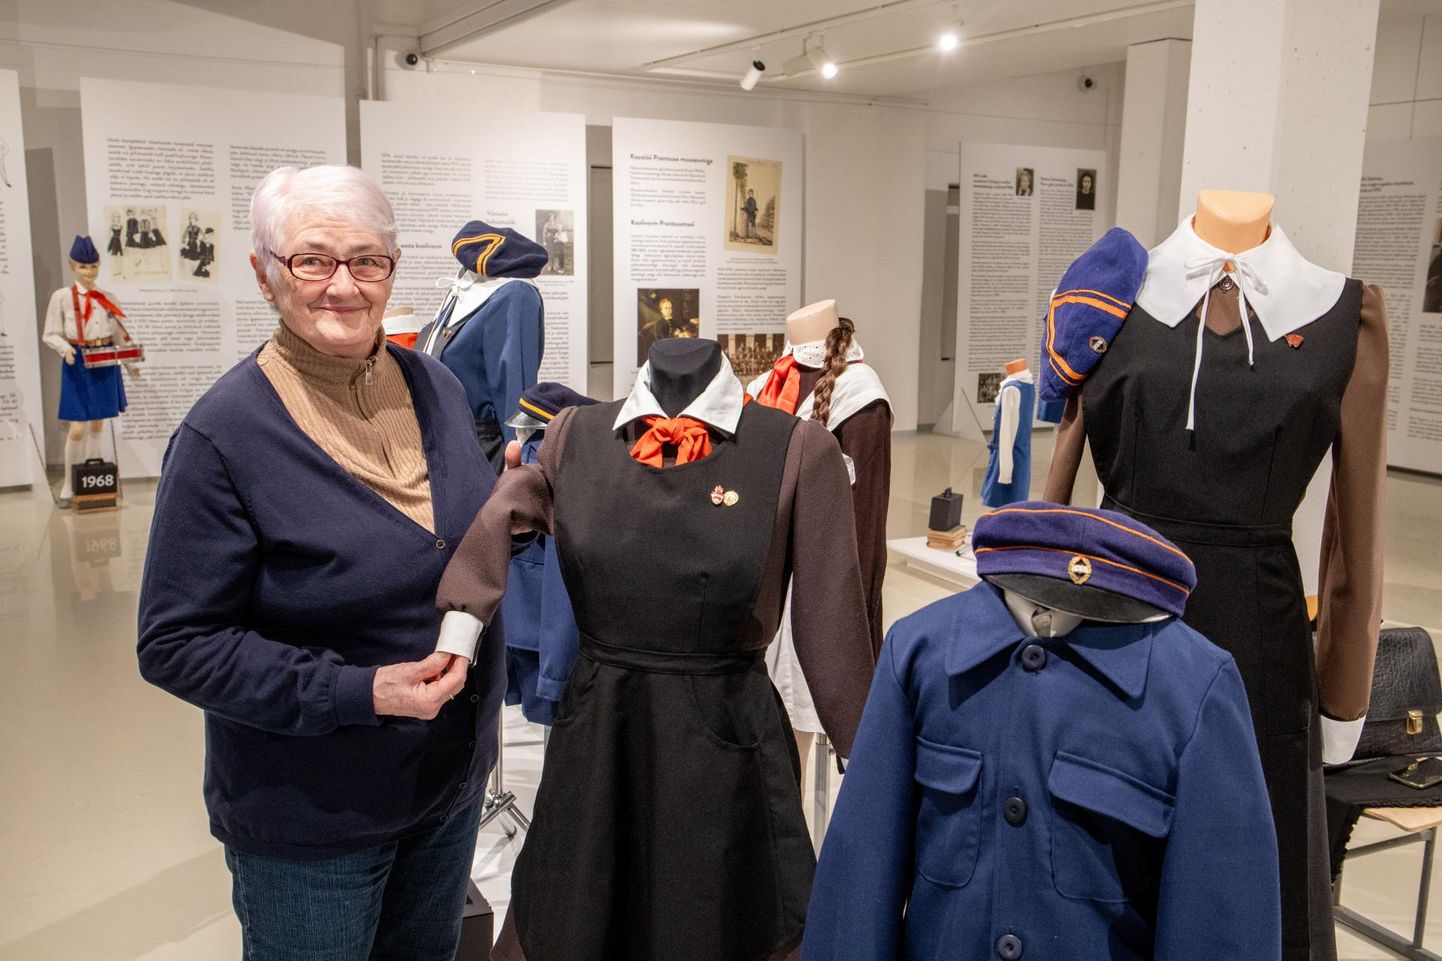 Kollektsiooni omanik, pärnakas Erika Lohk näitusel “Ema, ma kandsin vormi!” Pärnu muuseumis.